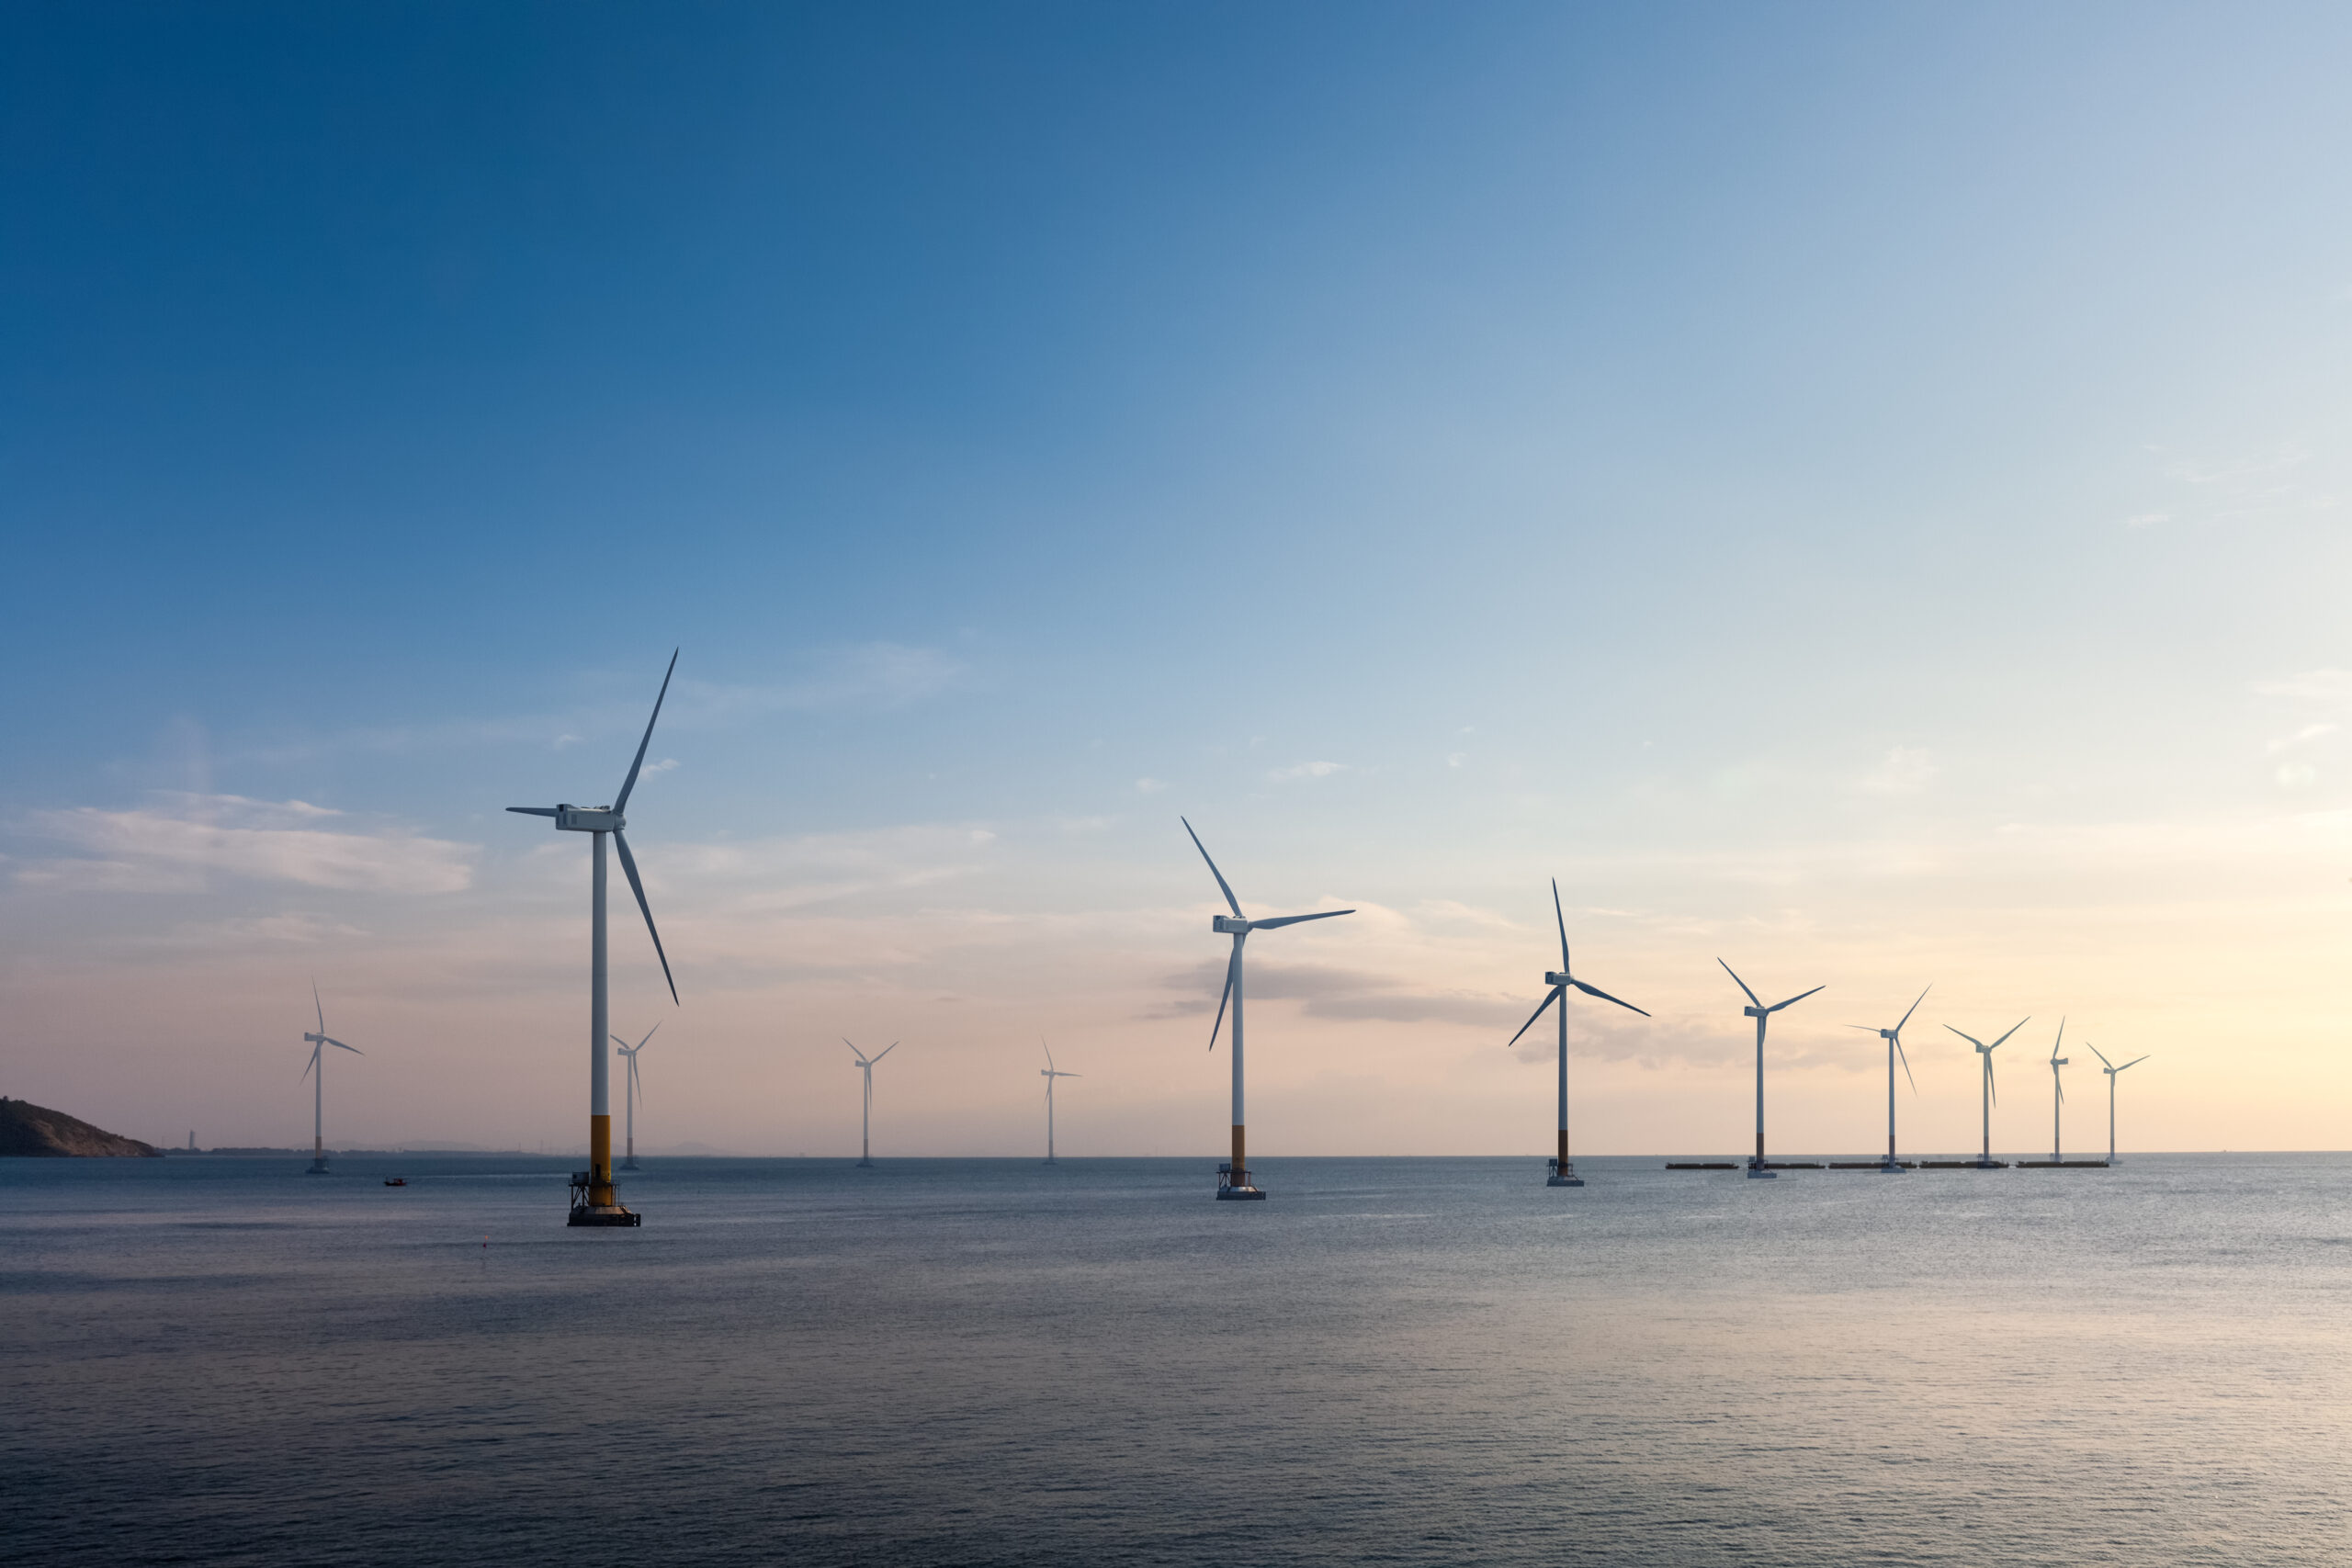 Der Bau von Windkraftanlagen im Meer verursacht sehr viel Lärm. © Shutterstock / Chuyuss